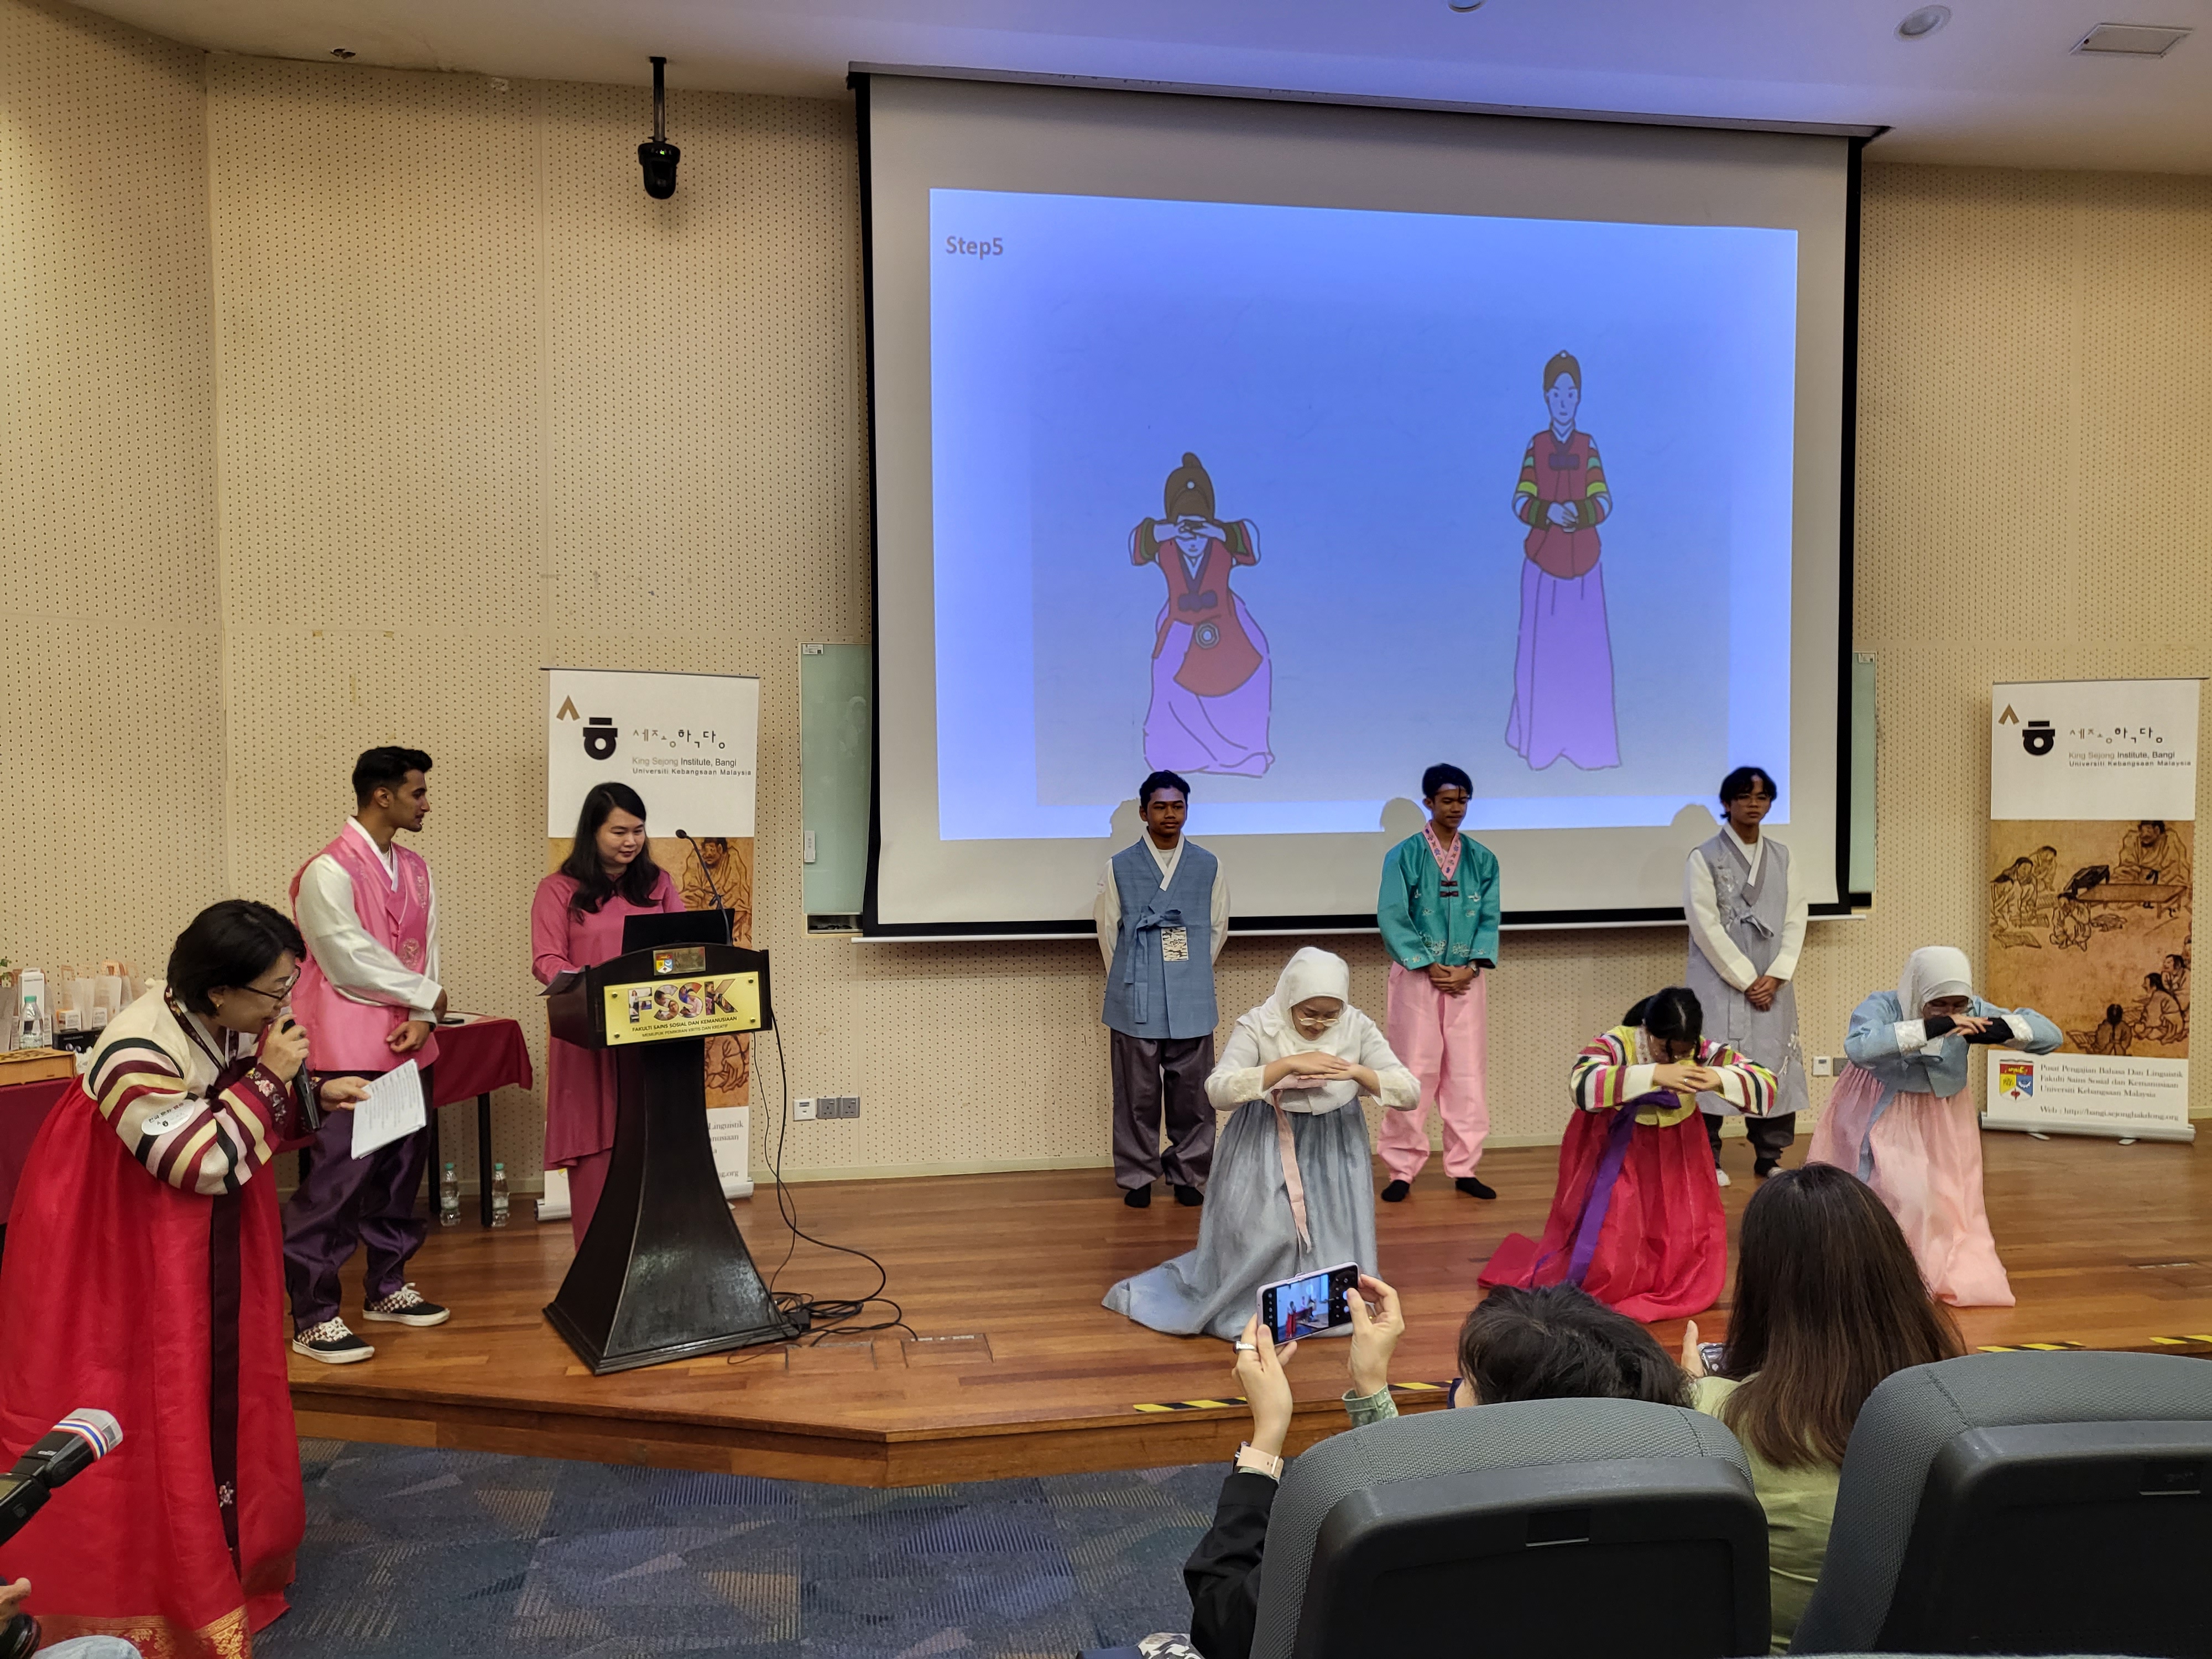 < 한복을 입고 한국의 전통문화를 배우며 즐거워하는 참가자들의 모습 - 출처: 통신원 촬영 >